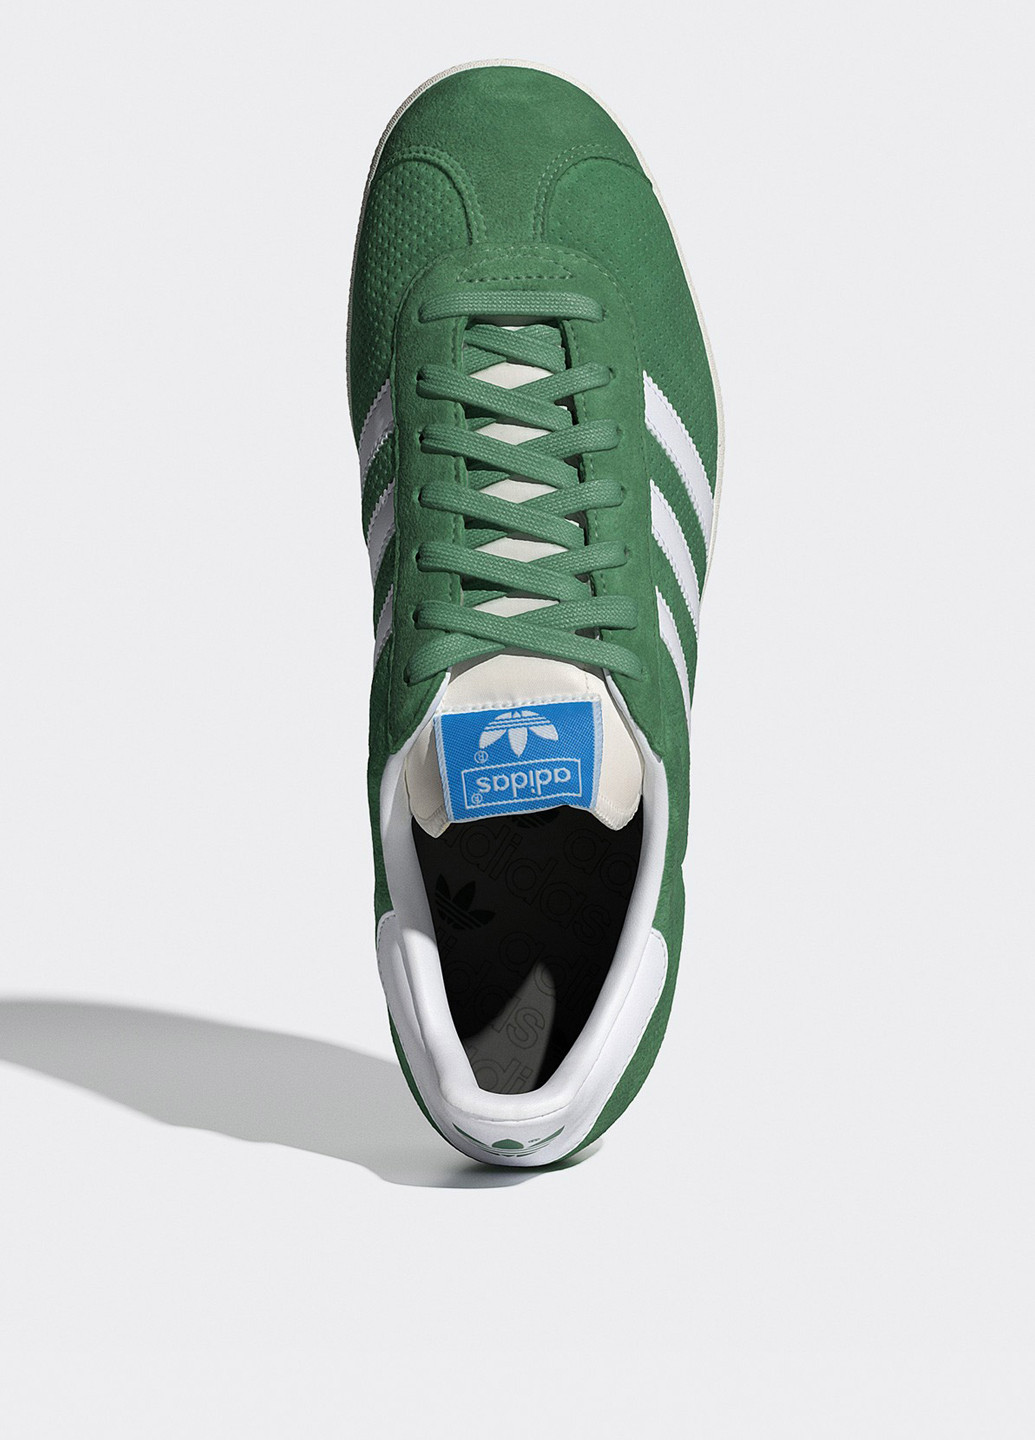 Зеленые всесезонные кроссовки adidas GAZELLE ORIGINALS